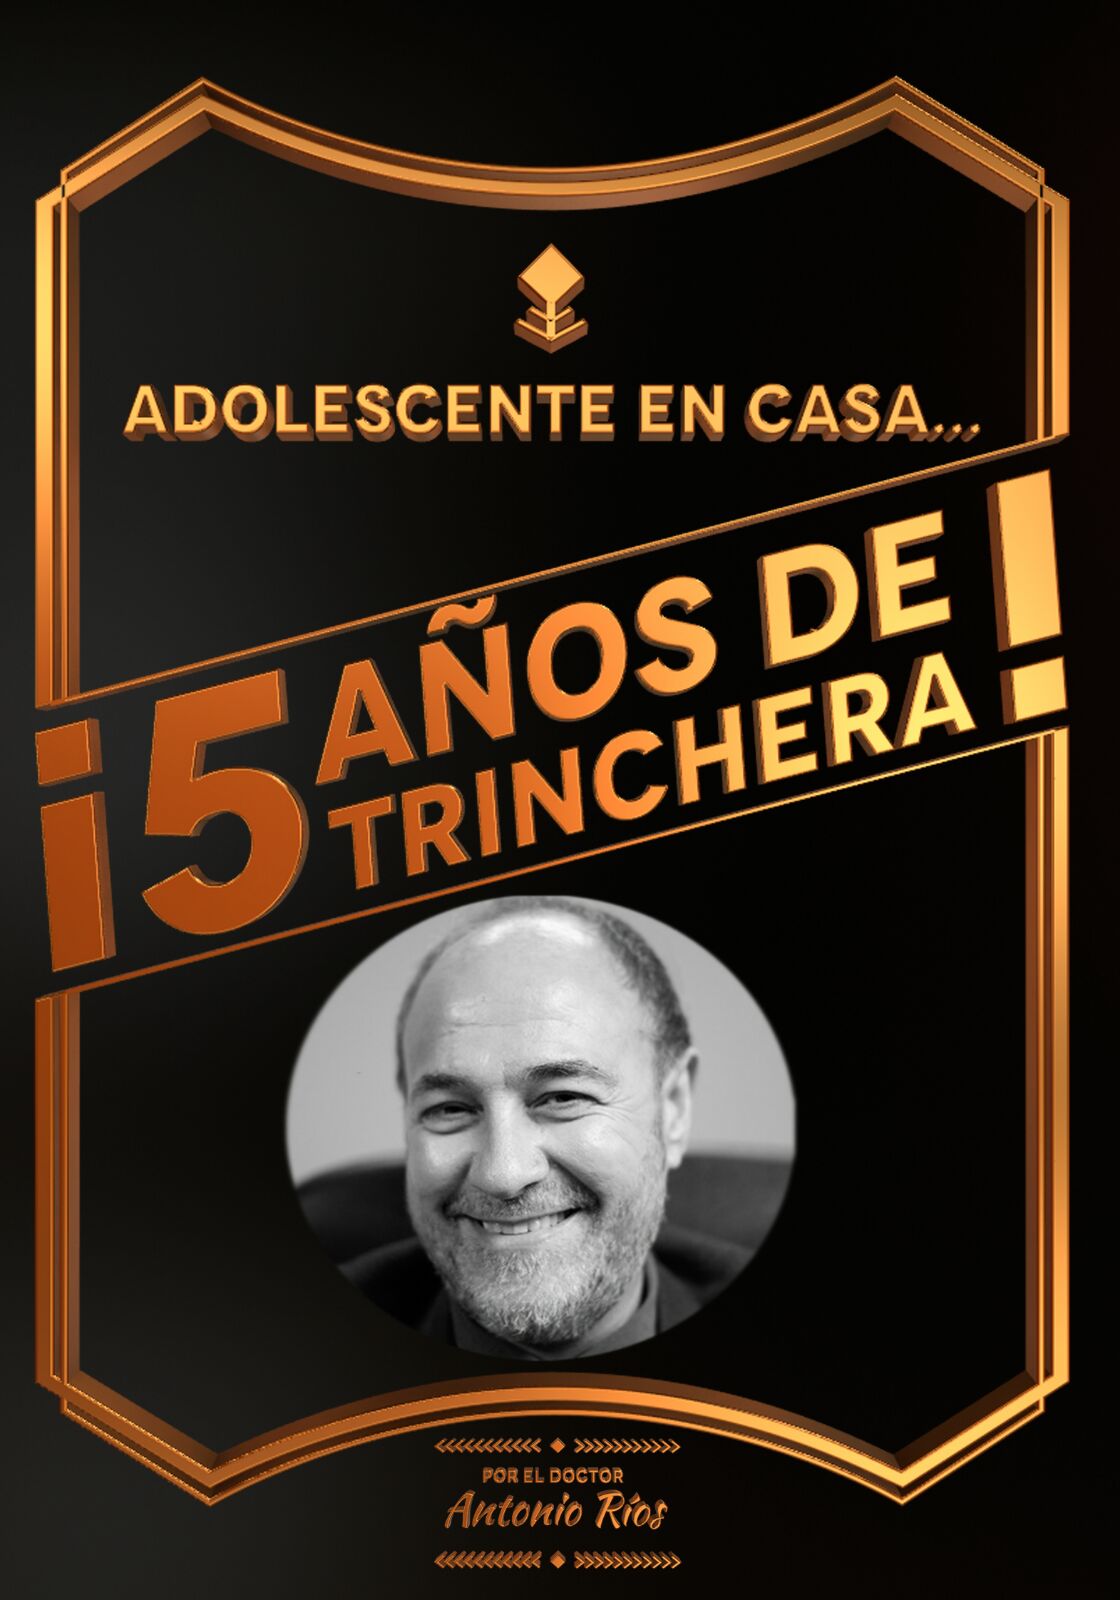 ADOLESCENTE EN CASA… ¡¡5 AÑOS DE TRINCHERA!!